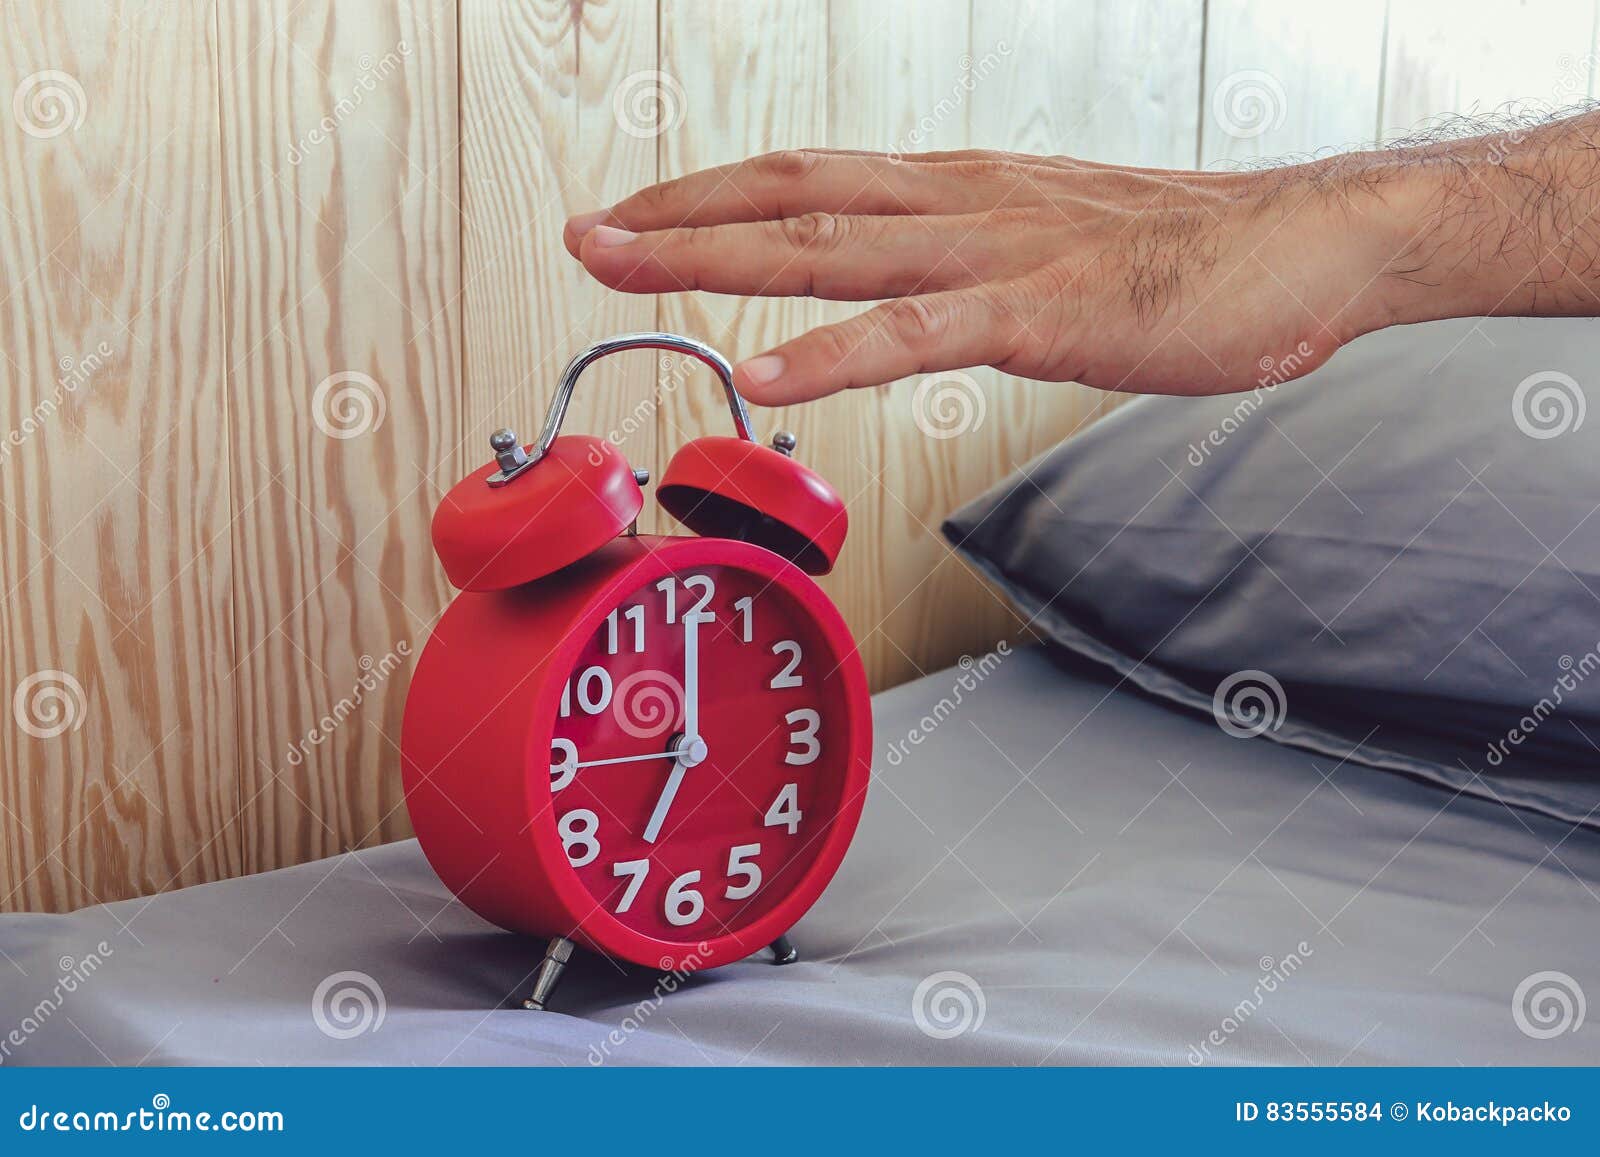 Есть включенный будильник. Виды будильников. Будильник на руке. Человек выключает будильник. Рука выключает будильник.